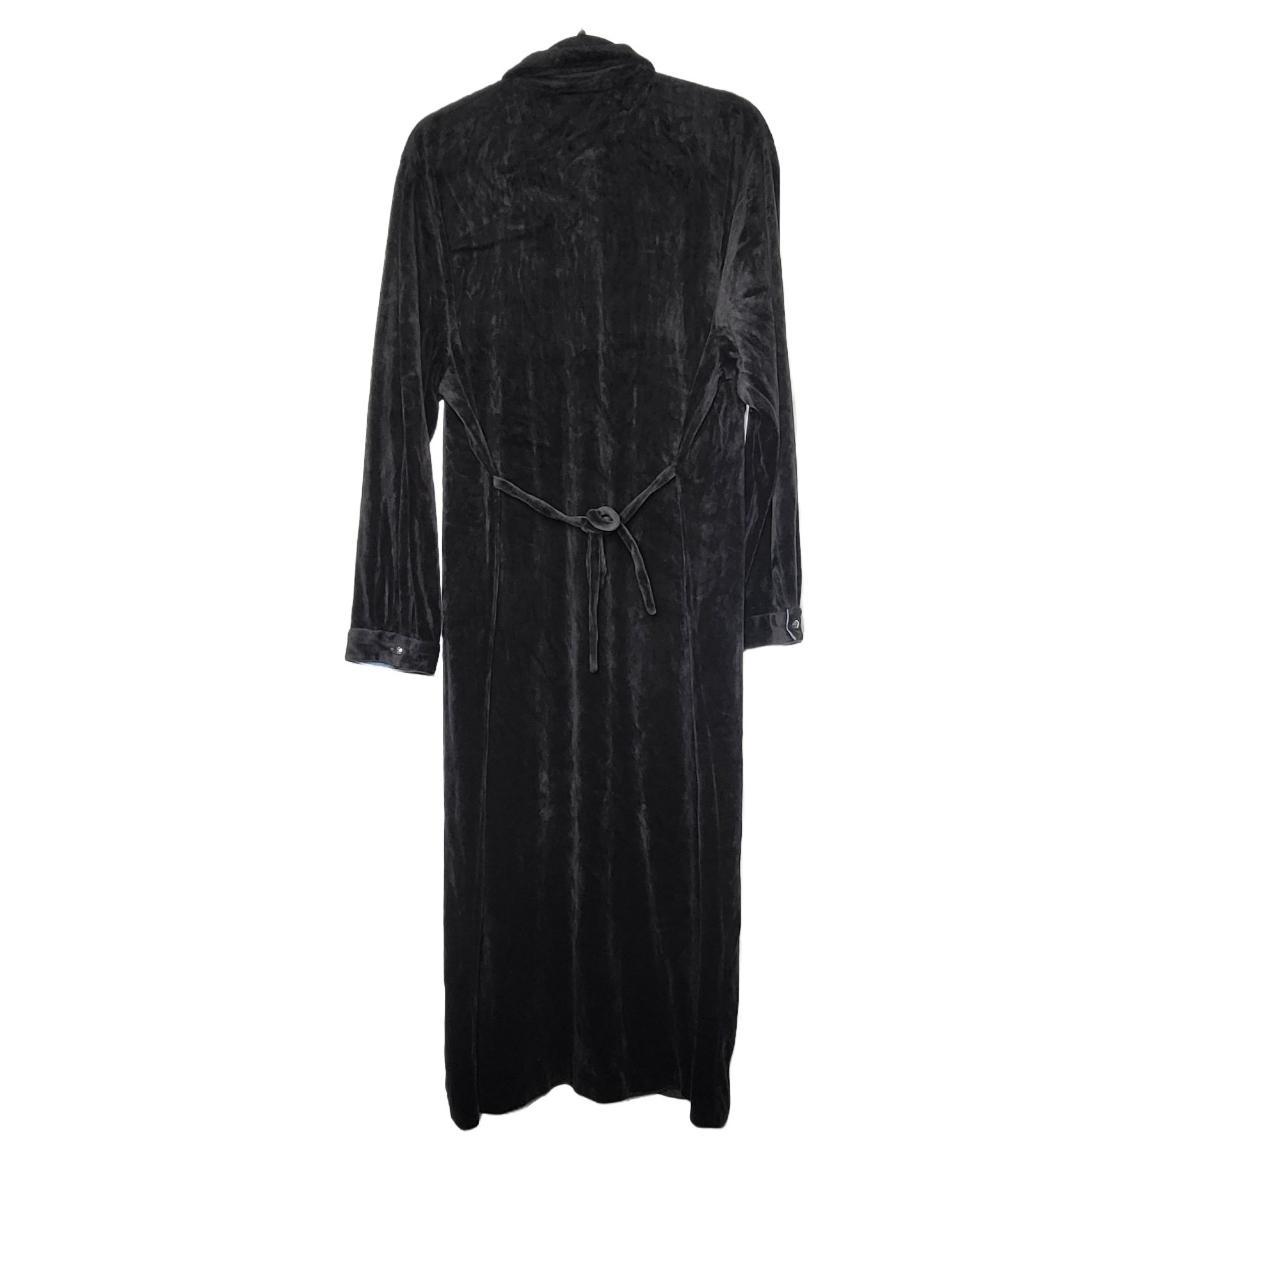 Vintage J. G. Hook Black Velvet Dress with Collar... - Depop